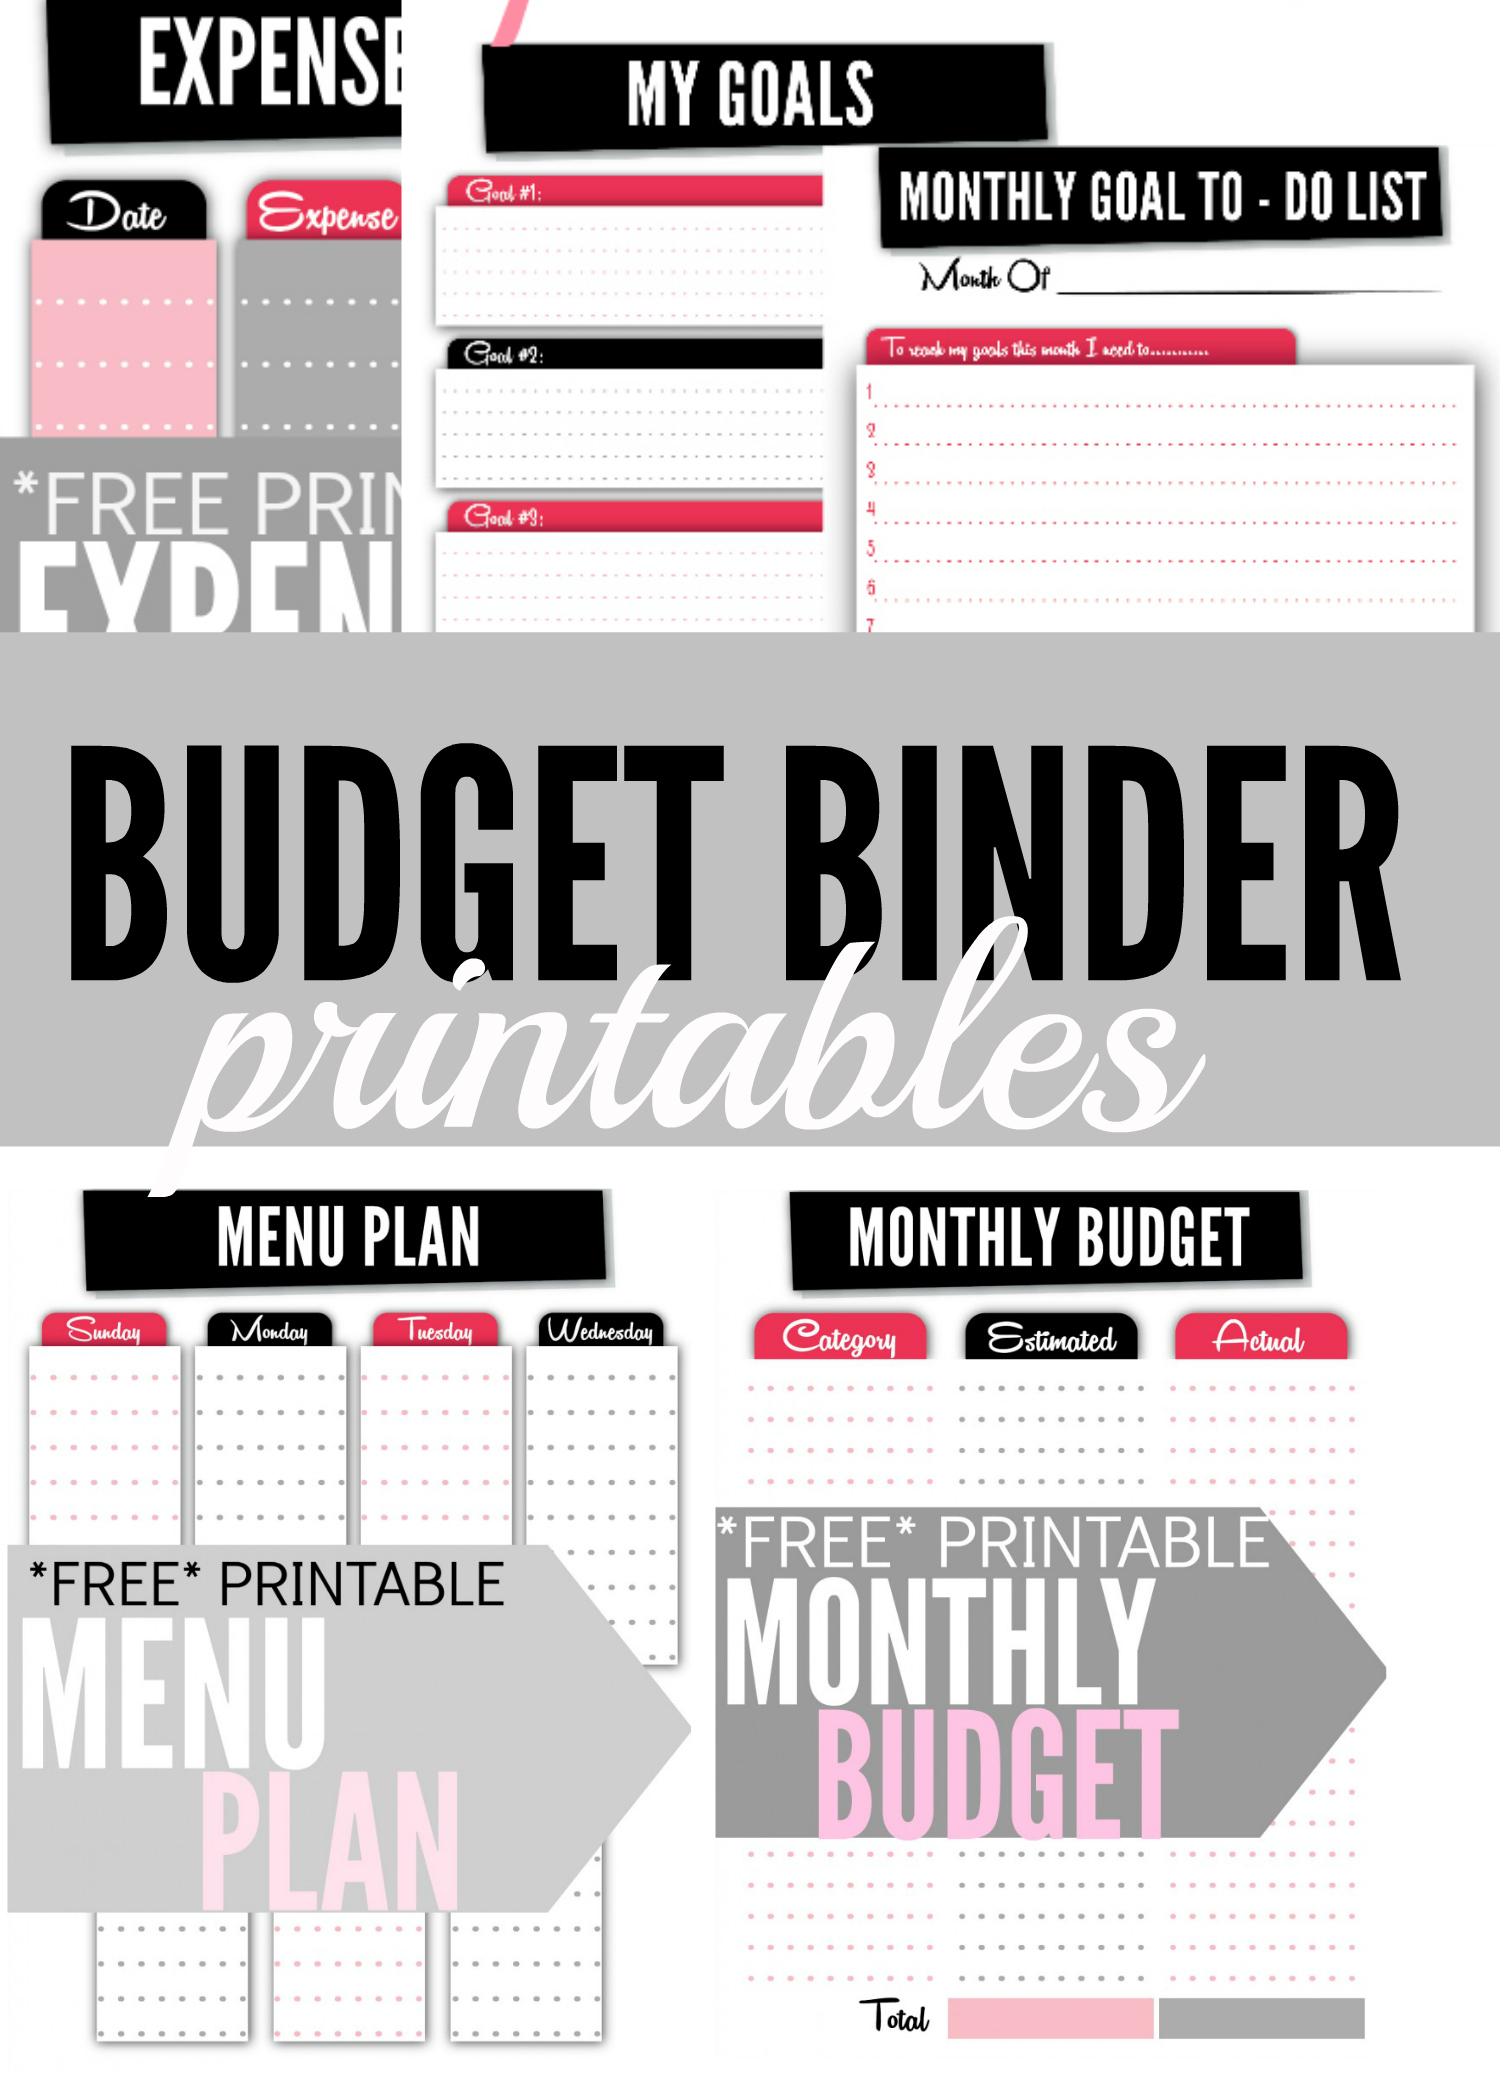 Budget Binder Printables - Single Moms Income - Free Printable Budget Binder Worksheets